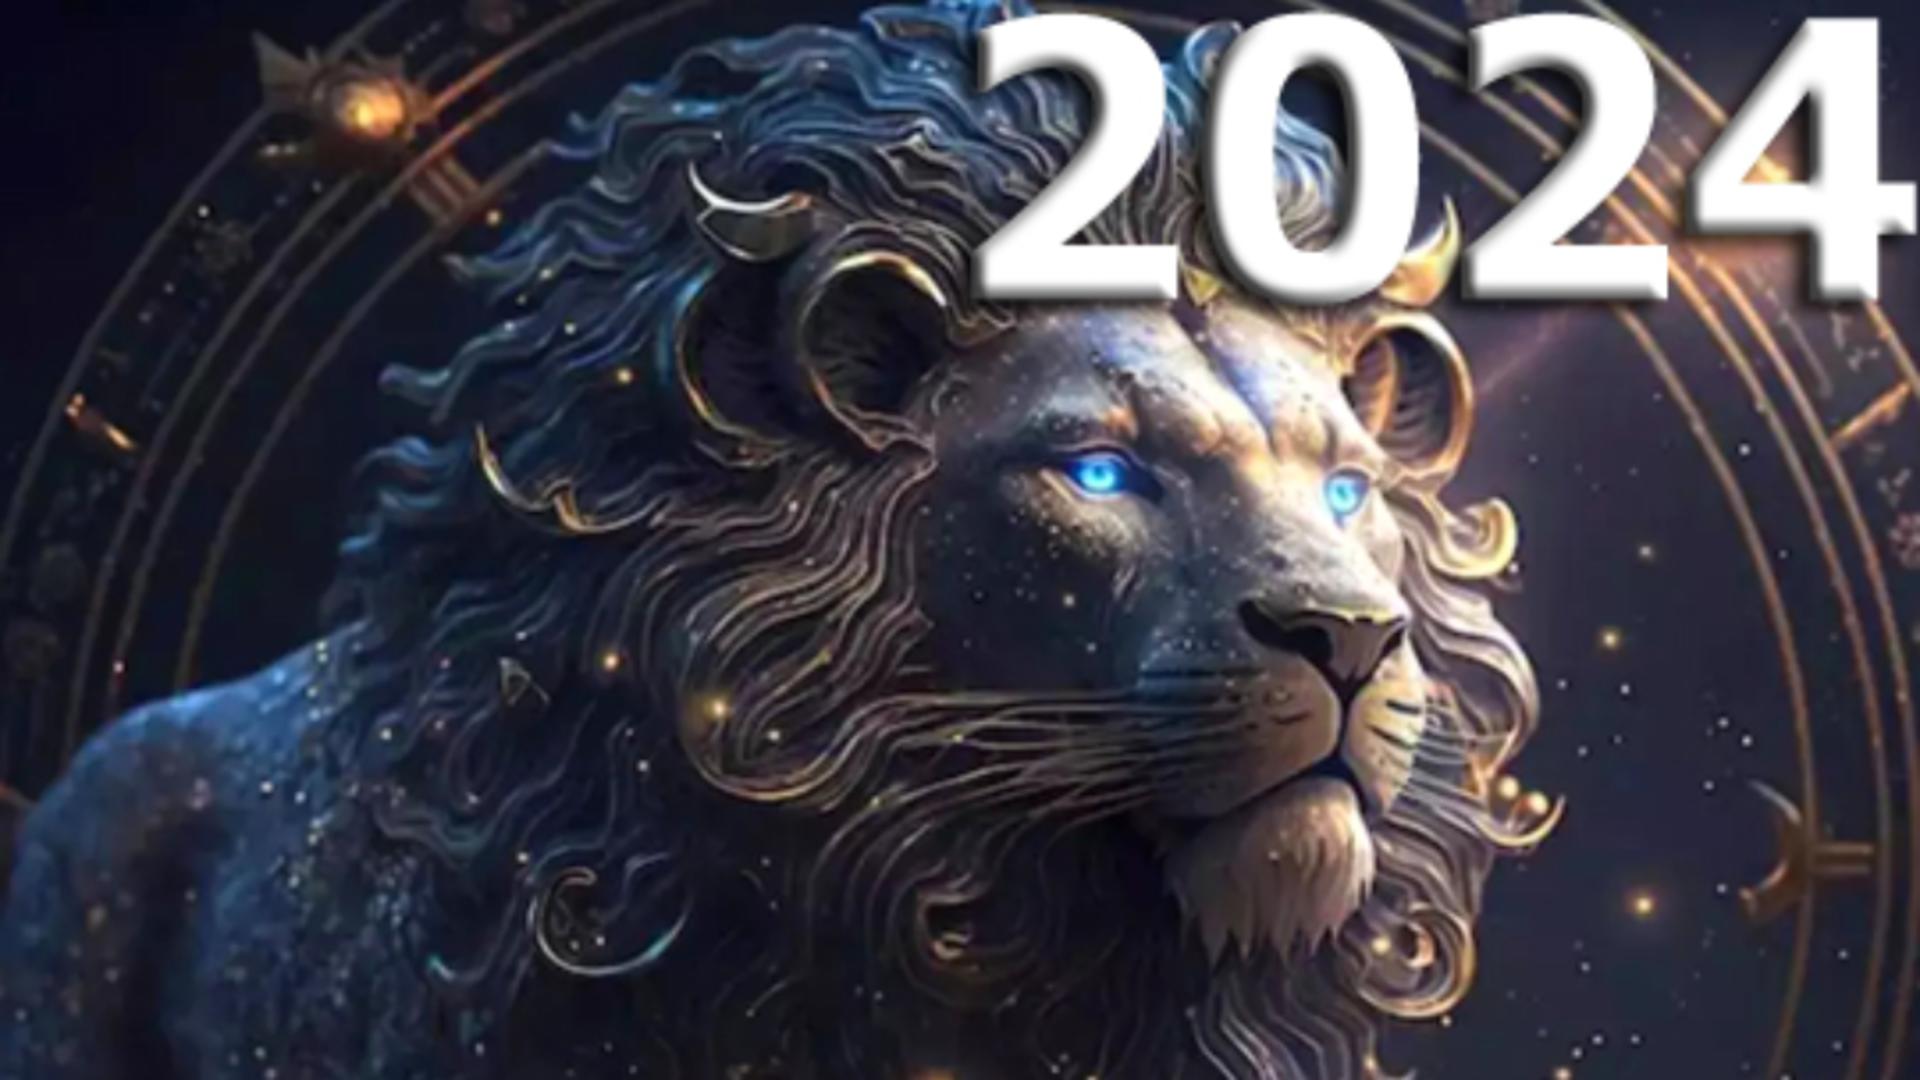 Horoscopul anului 2024 – Leu. Vei străluci în carieră. An bun pentru organizarea finanțelor